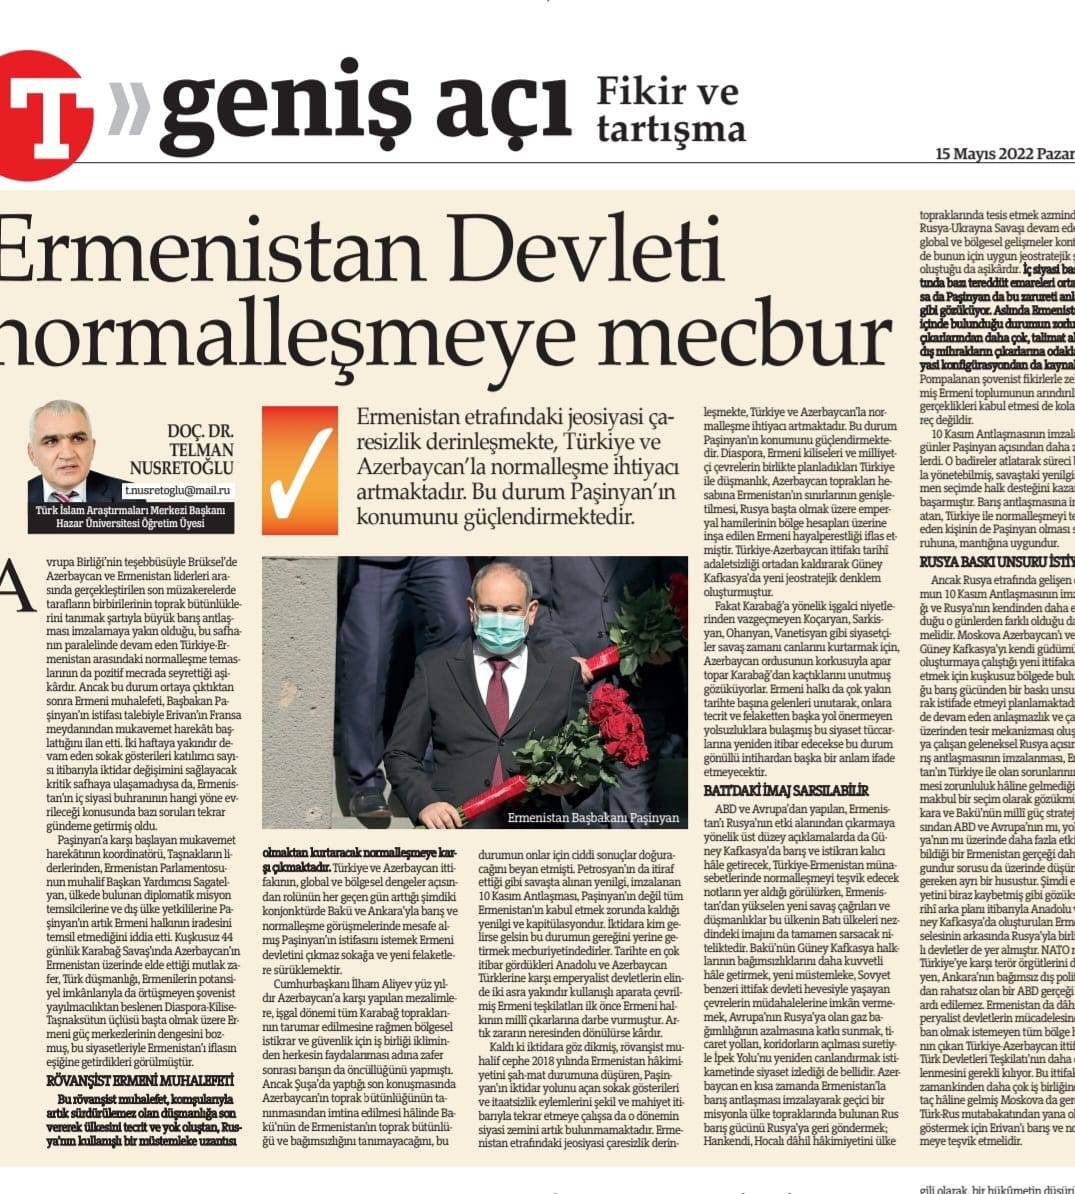 Article by Department Head in "Turkiye" newspaper